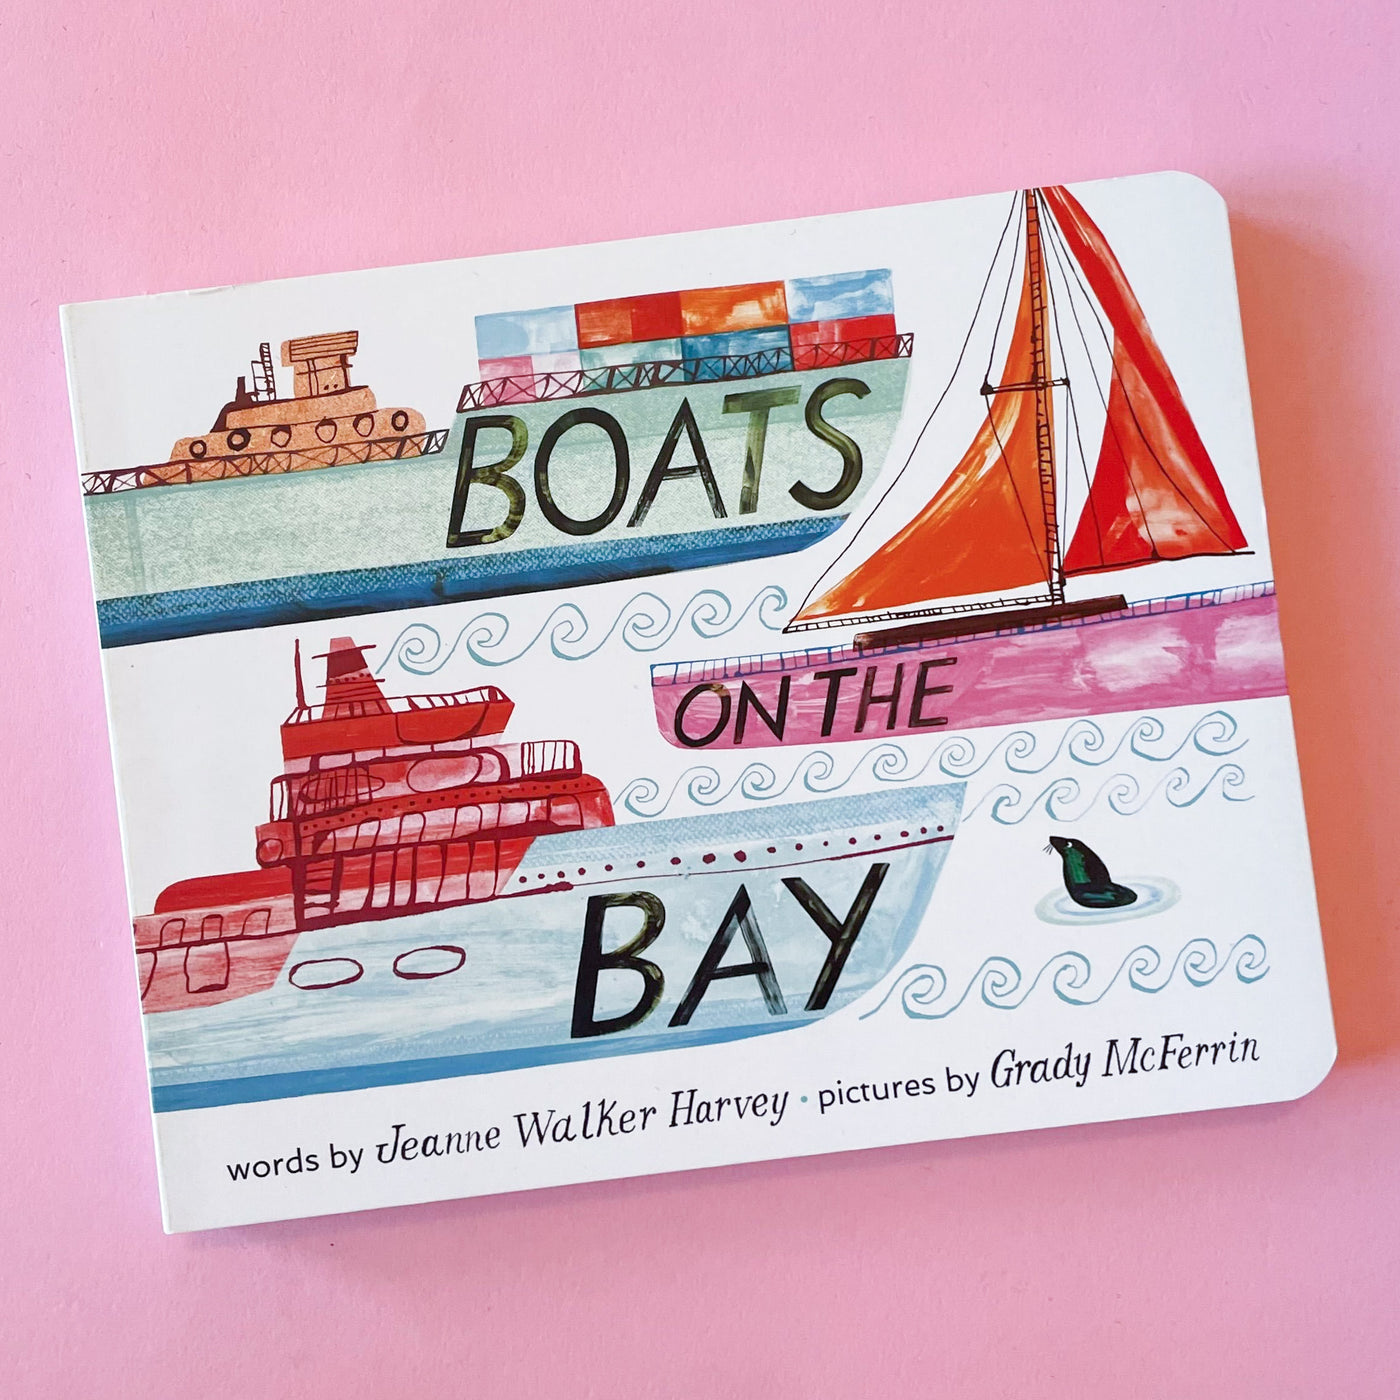 Boats on the Bay by Jeanne Walker Harvey and Grady McFerrin